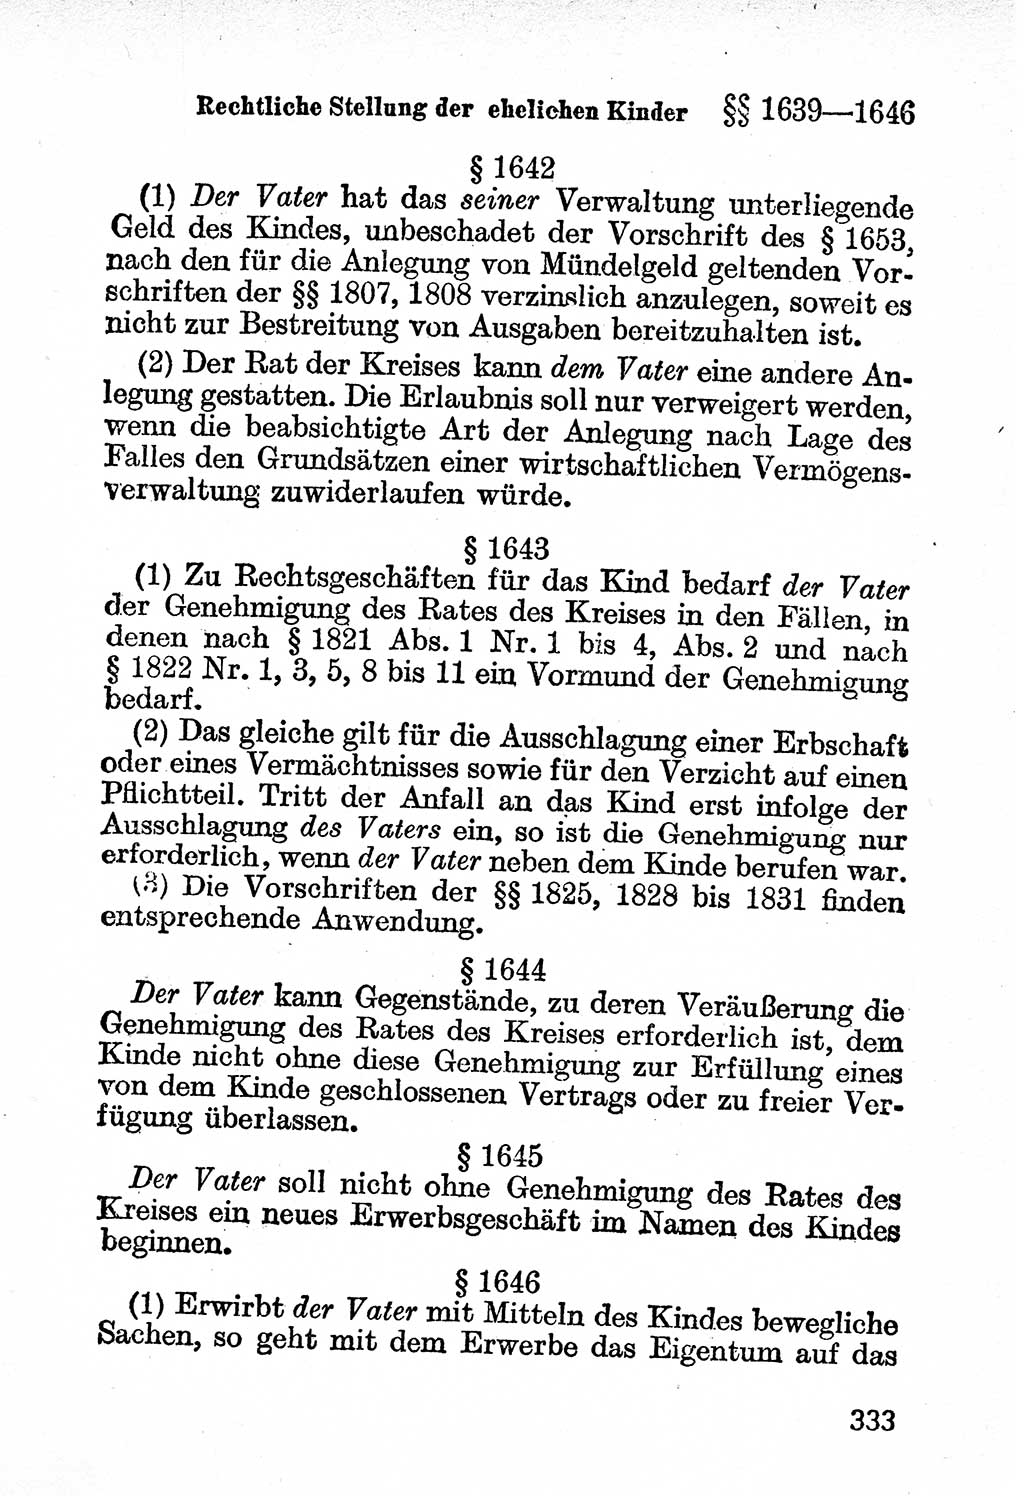 Bürgerliches Gesetzbuch (BGB) nebst wichtigen Nebengesetzen [Deutsche Demokratische Republik (DDR)] 1956, Seite 333 (BGB Nebenges. DDR 1956, S. 333)